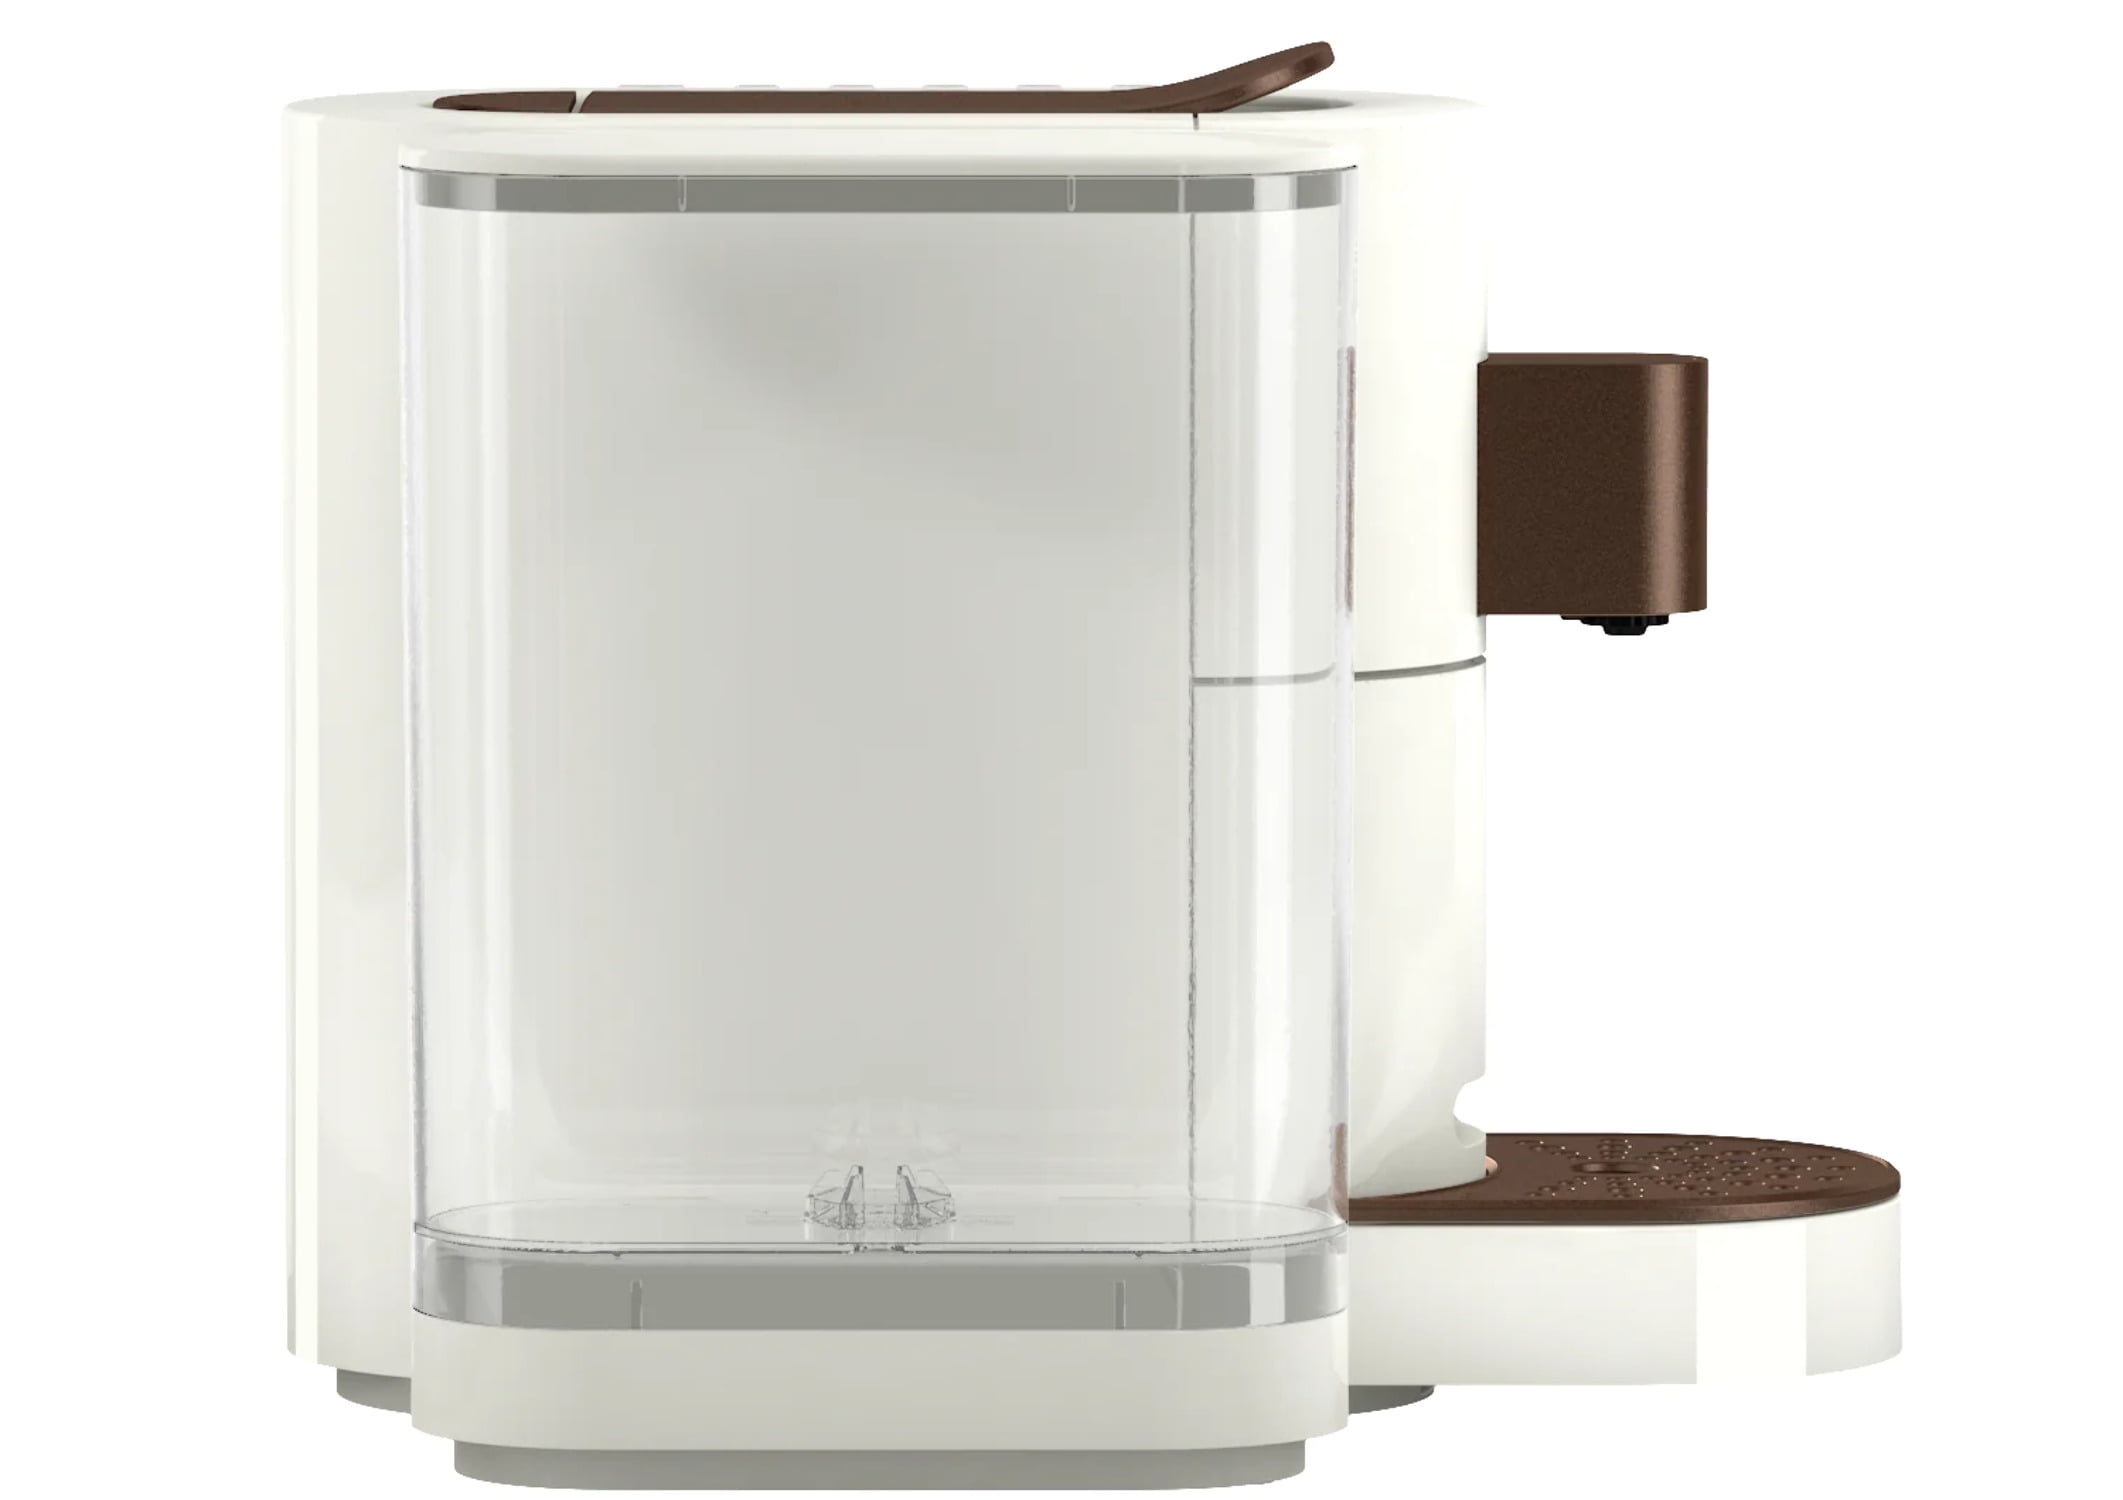 K-fee One Verismo Compatible Single Serve 19 Bar Dou-Pressure Coffee/Espresso Machine (Black/Copper)